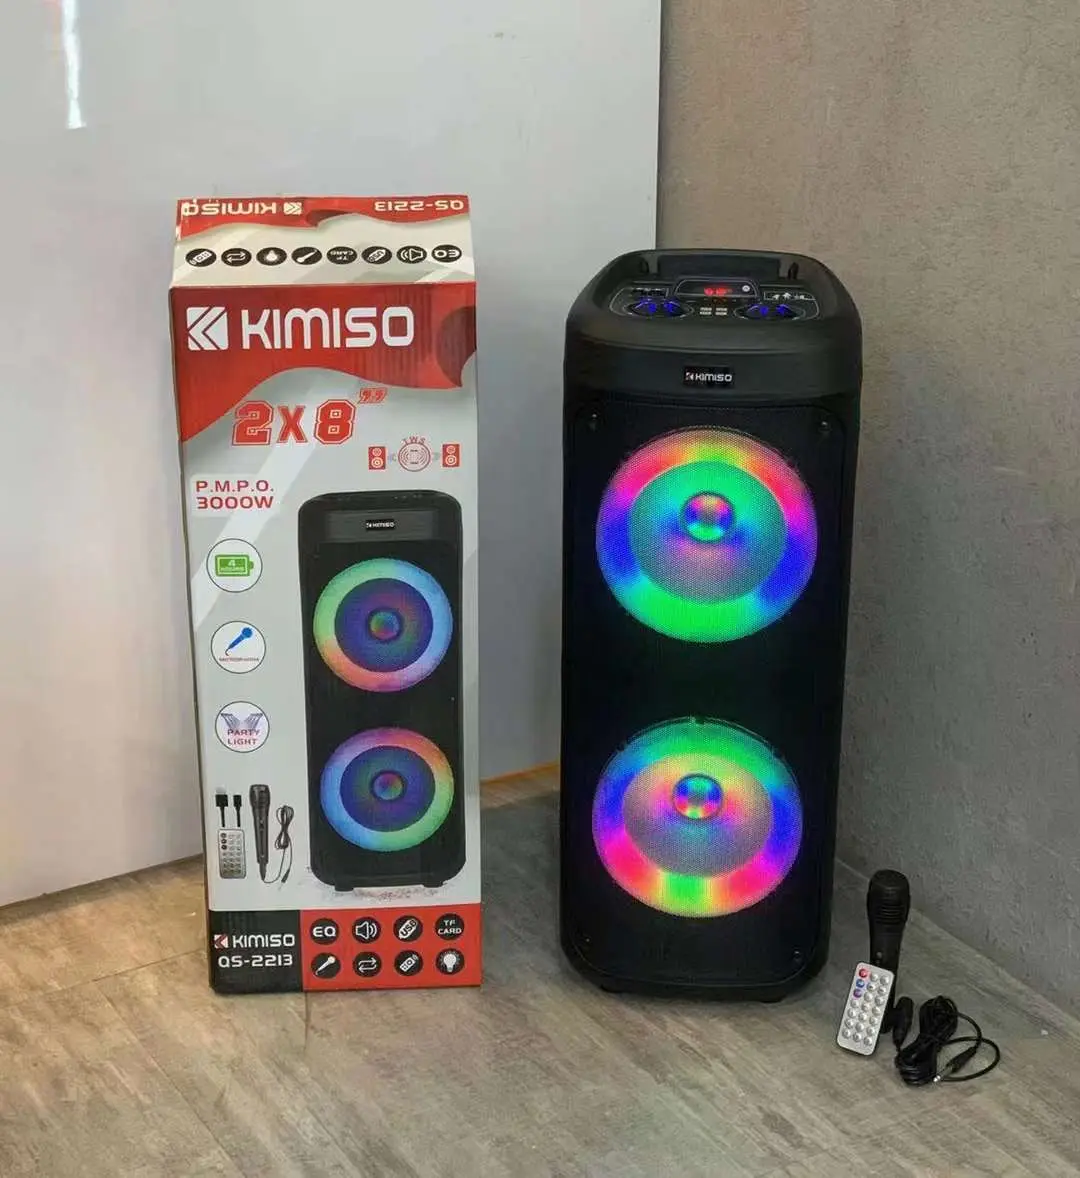 KIMISO QS-2213 새로운 BT 스피커 멀티미디어 오디오 Oem 맞춤형 로고 서브 우퍼 무선 홈 시어터 시스템